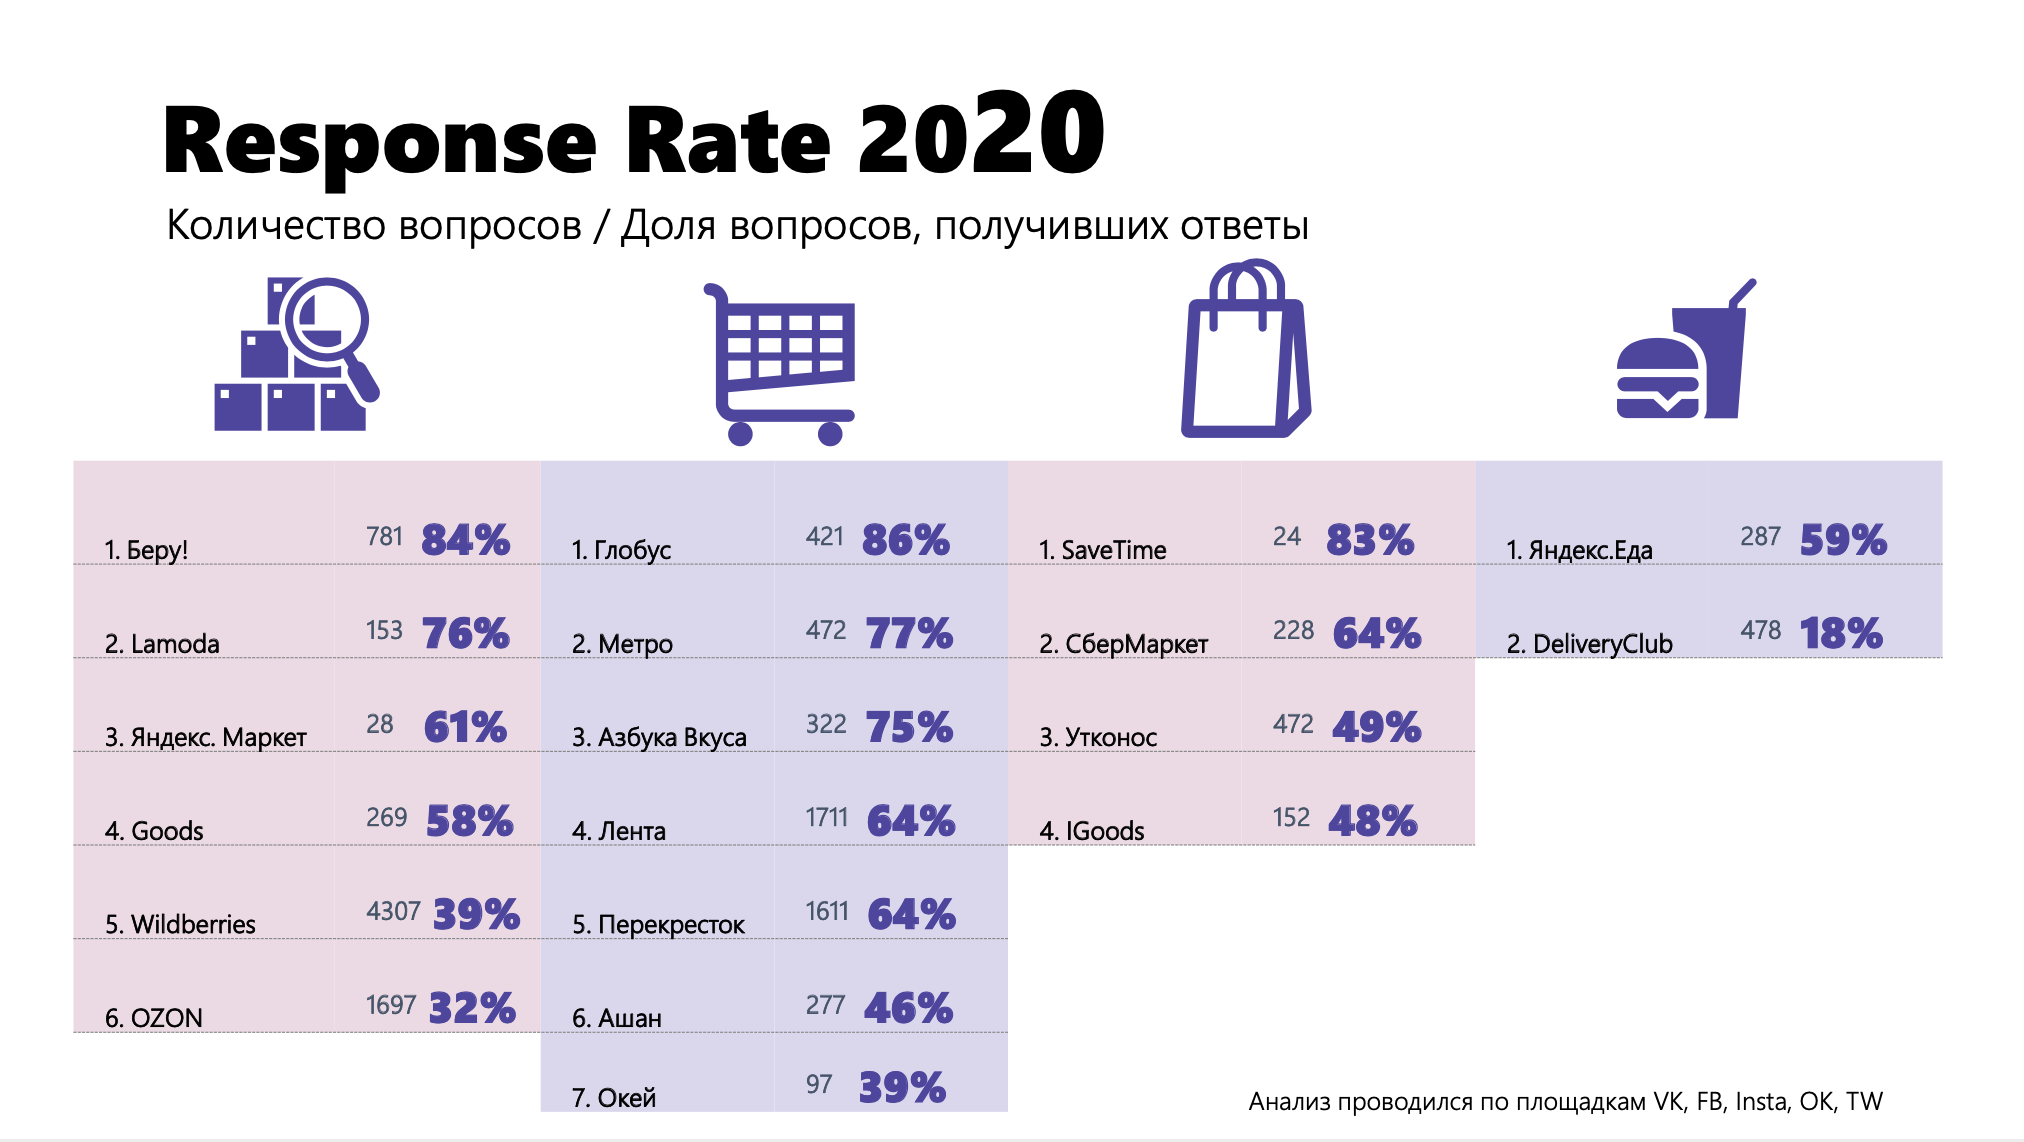 Пользователи стали чаще задавать брендам вопросы - Response rate 2020